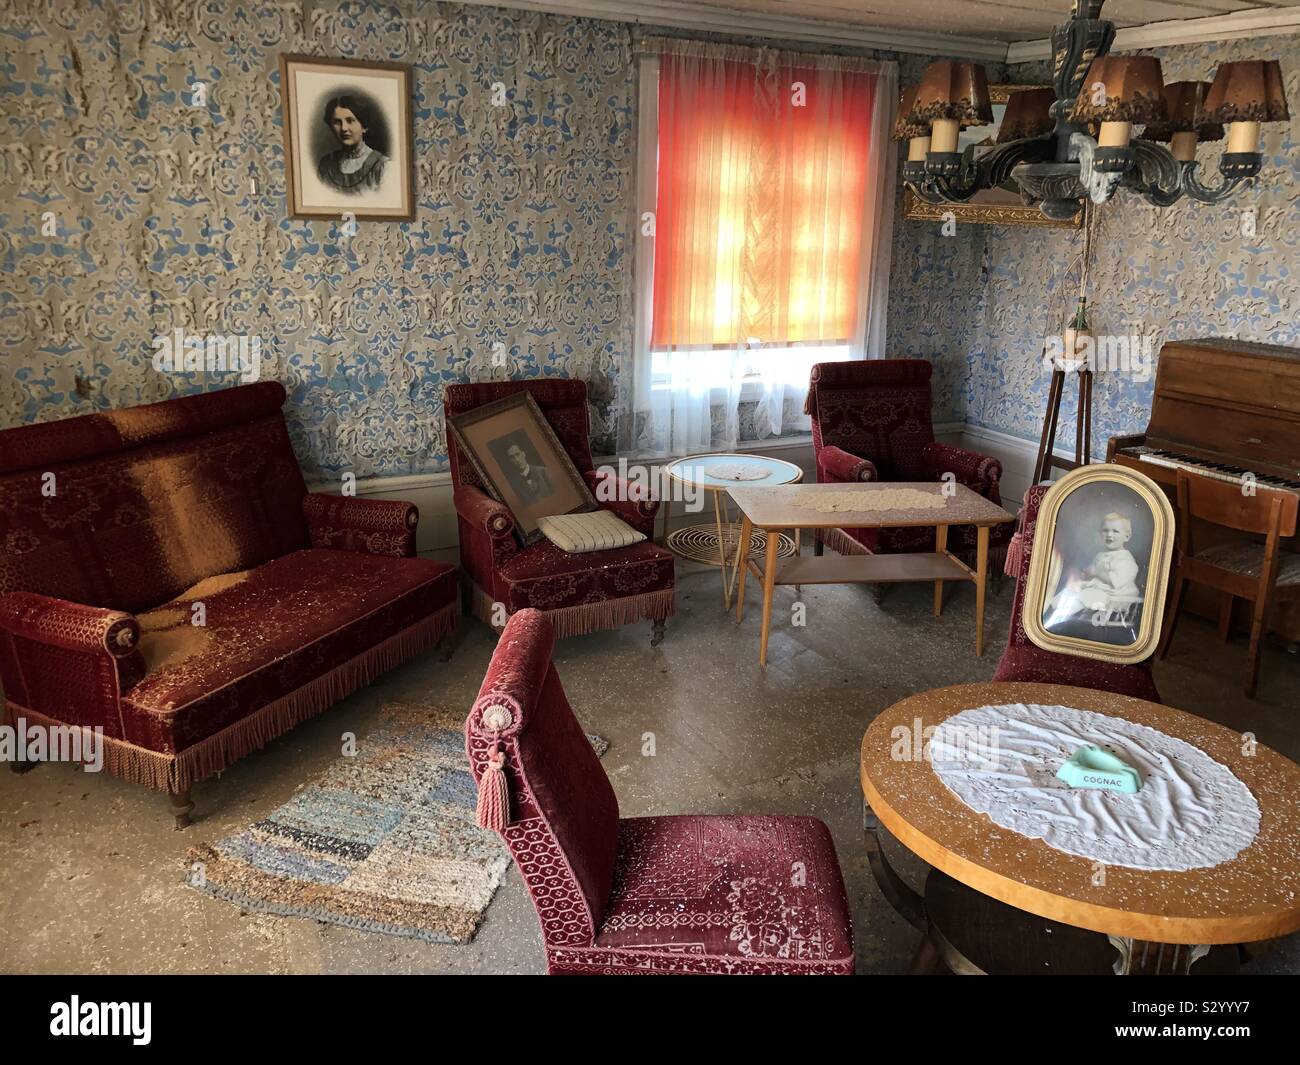 Decadendo salotto interno della vecchia fattoria abbandonata con stile vintage mobili, un pianoforte, incorniciato ritratti e pareti con carta da parati gregge. Foto Stock